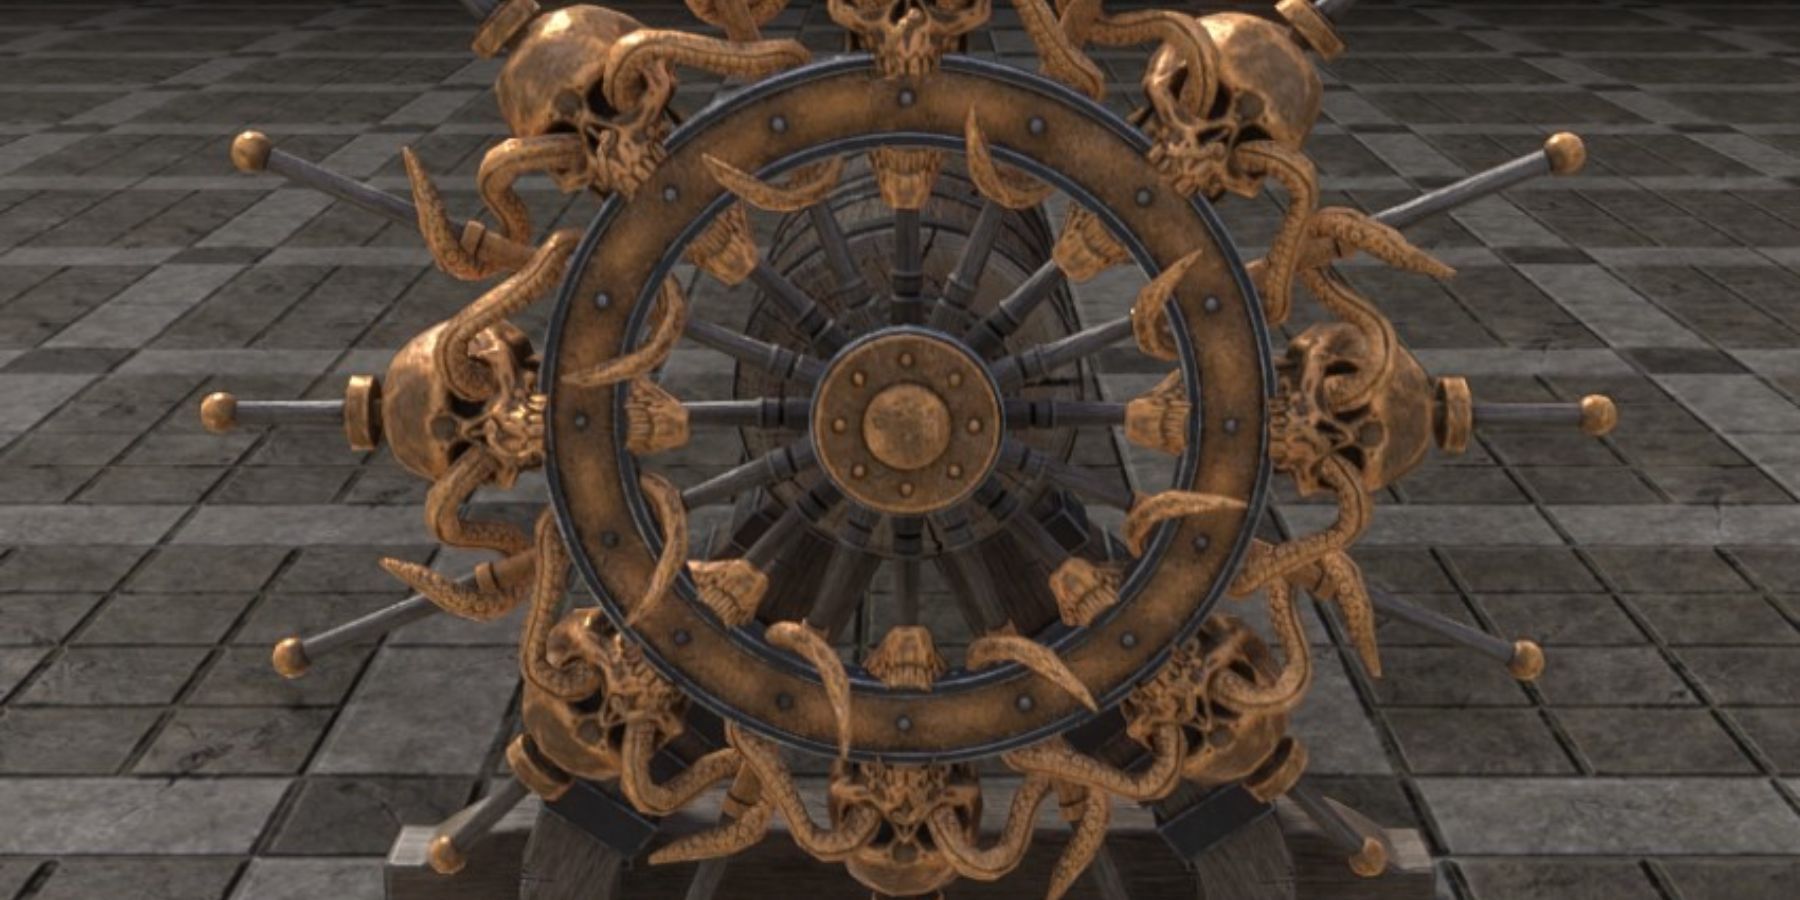 Elder Scrolls Online High Isle Лучшие новые предметы интерьера Шлем галеона морских эльфов